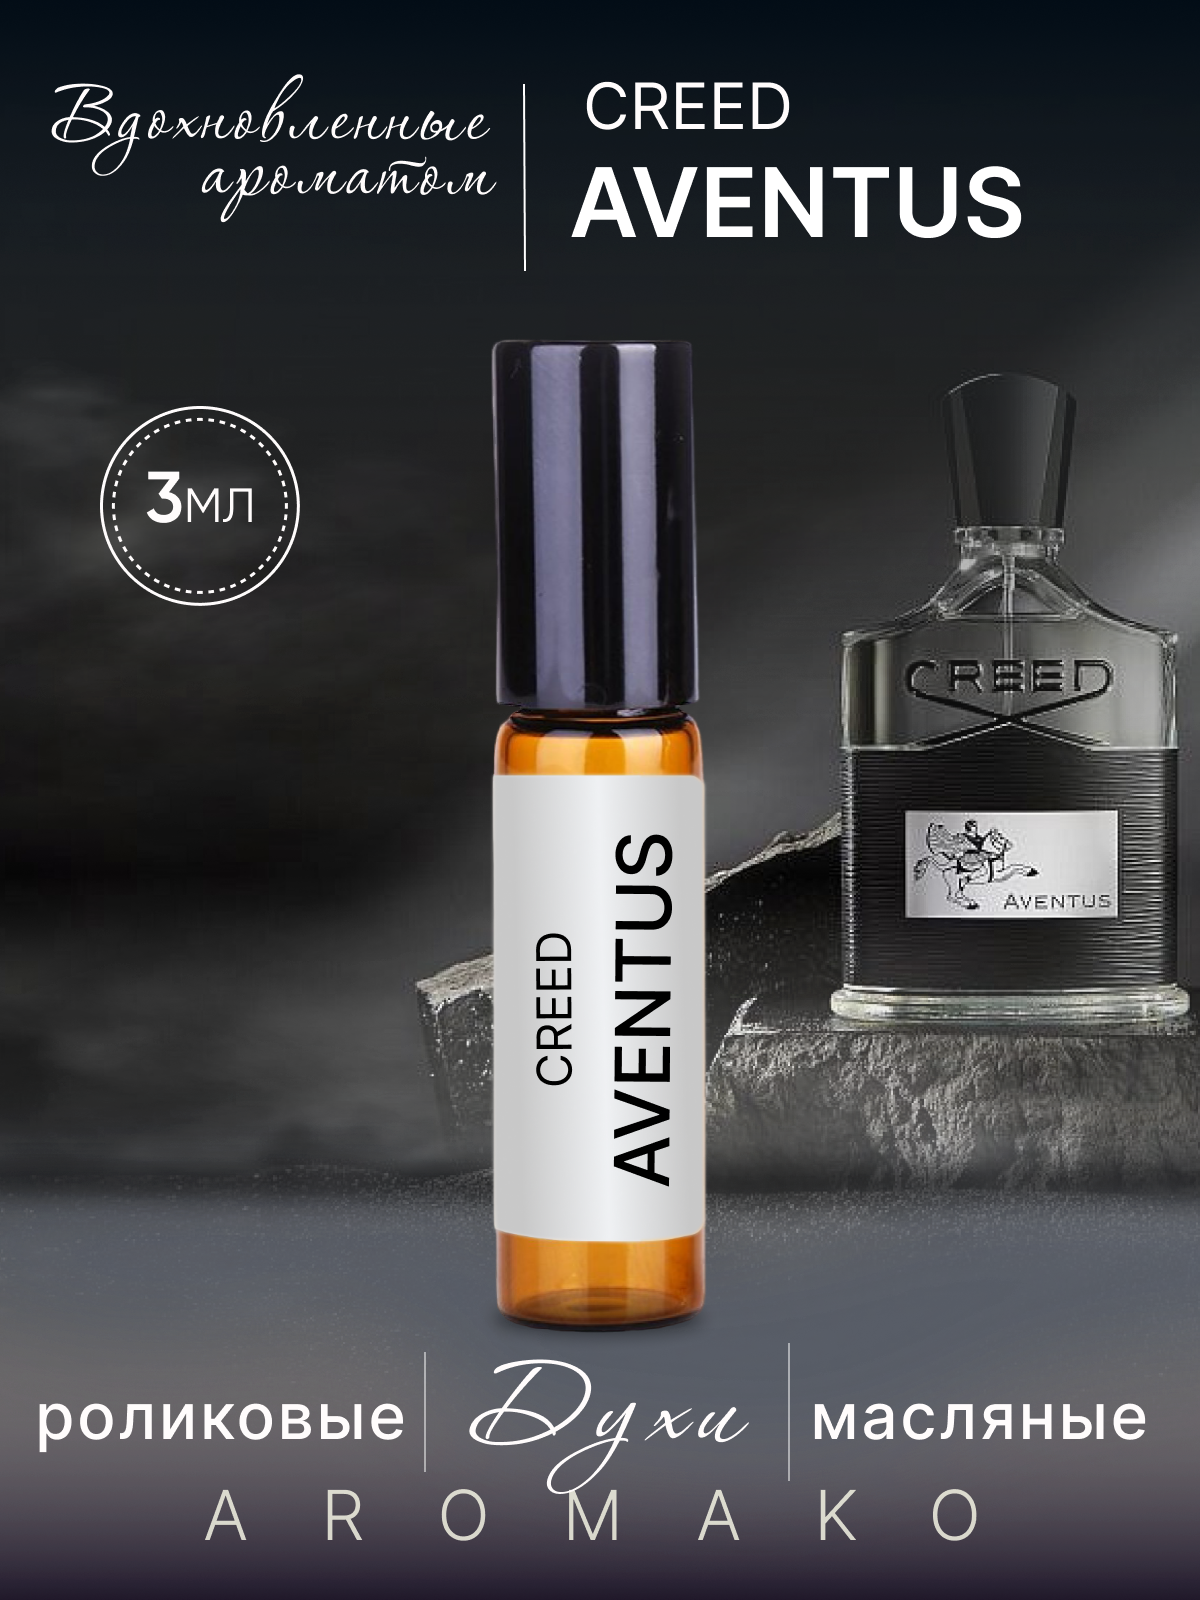 Духи масляные, парфюм - ролик по мотивам Creed, Aventus 3 мл, AROMAKO